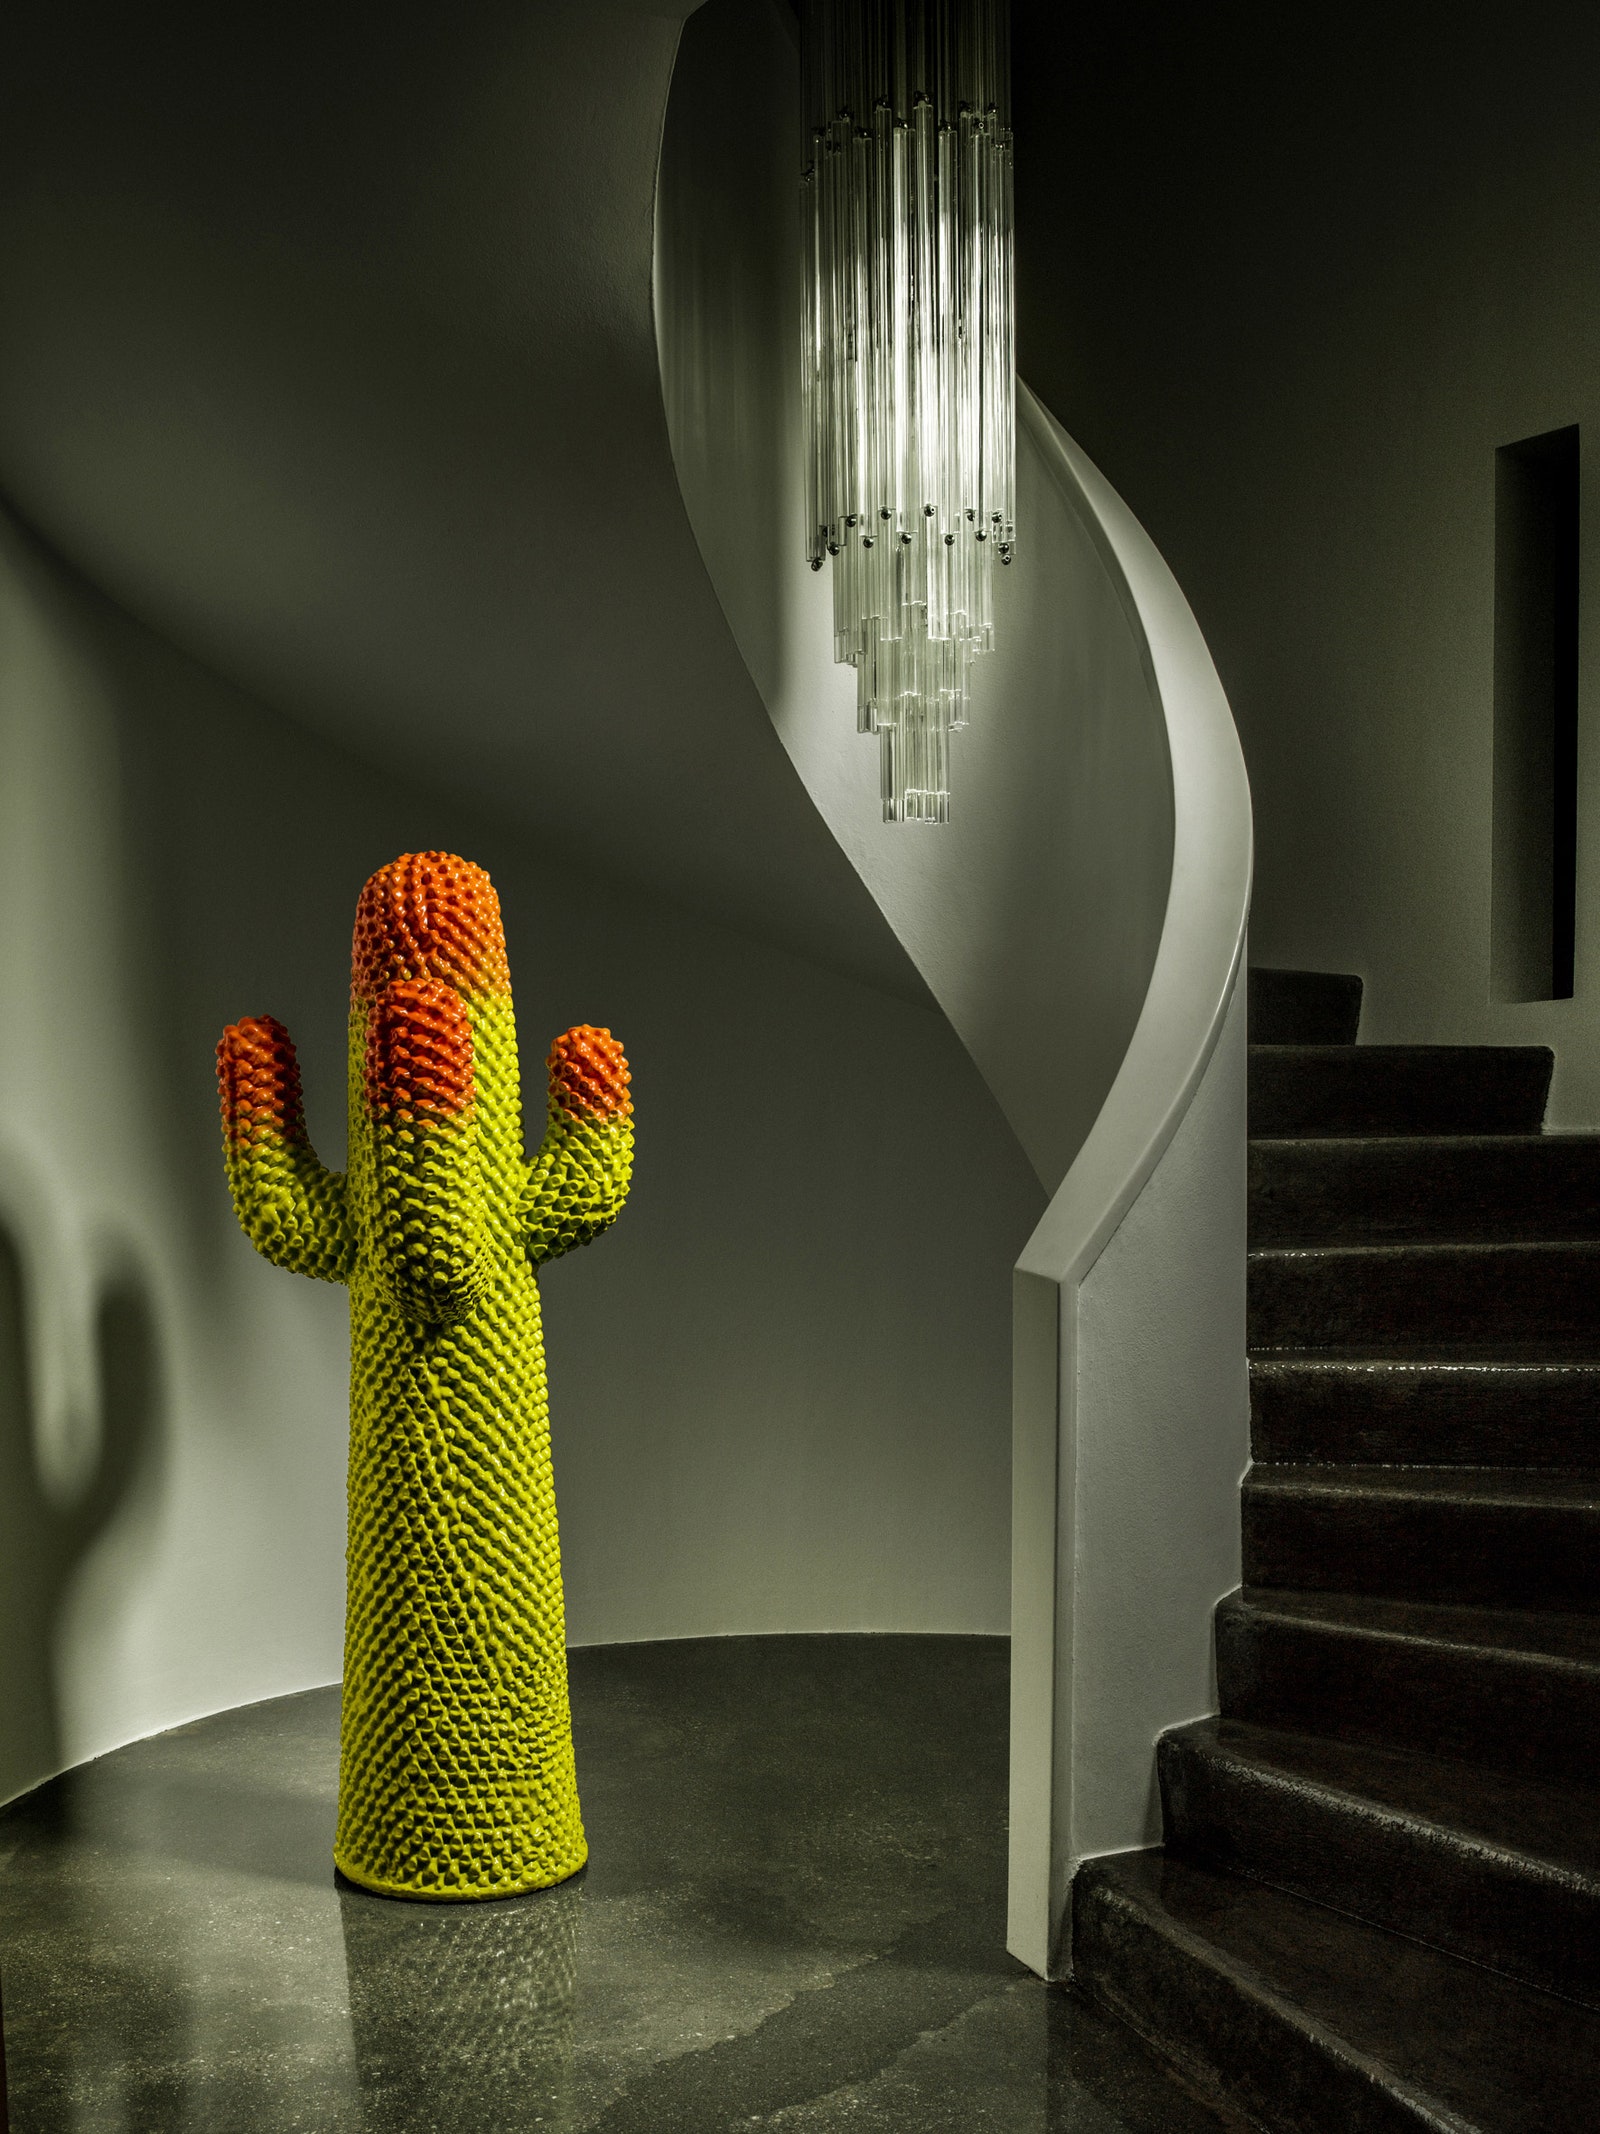 Gufram Cactus от дизайнеров Guido Drocco and Franco Mello 1972. © Gufram.